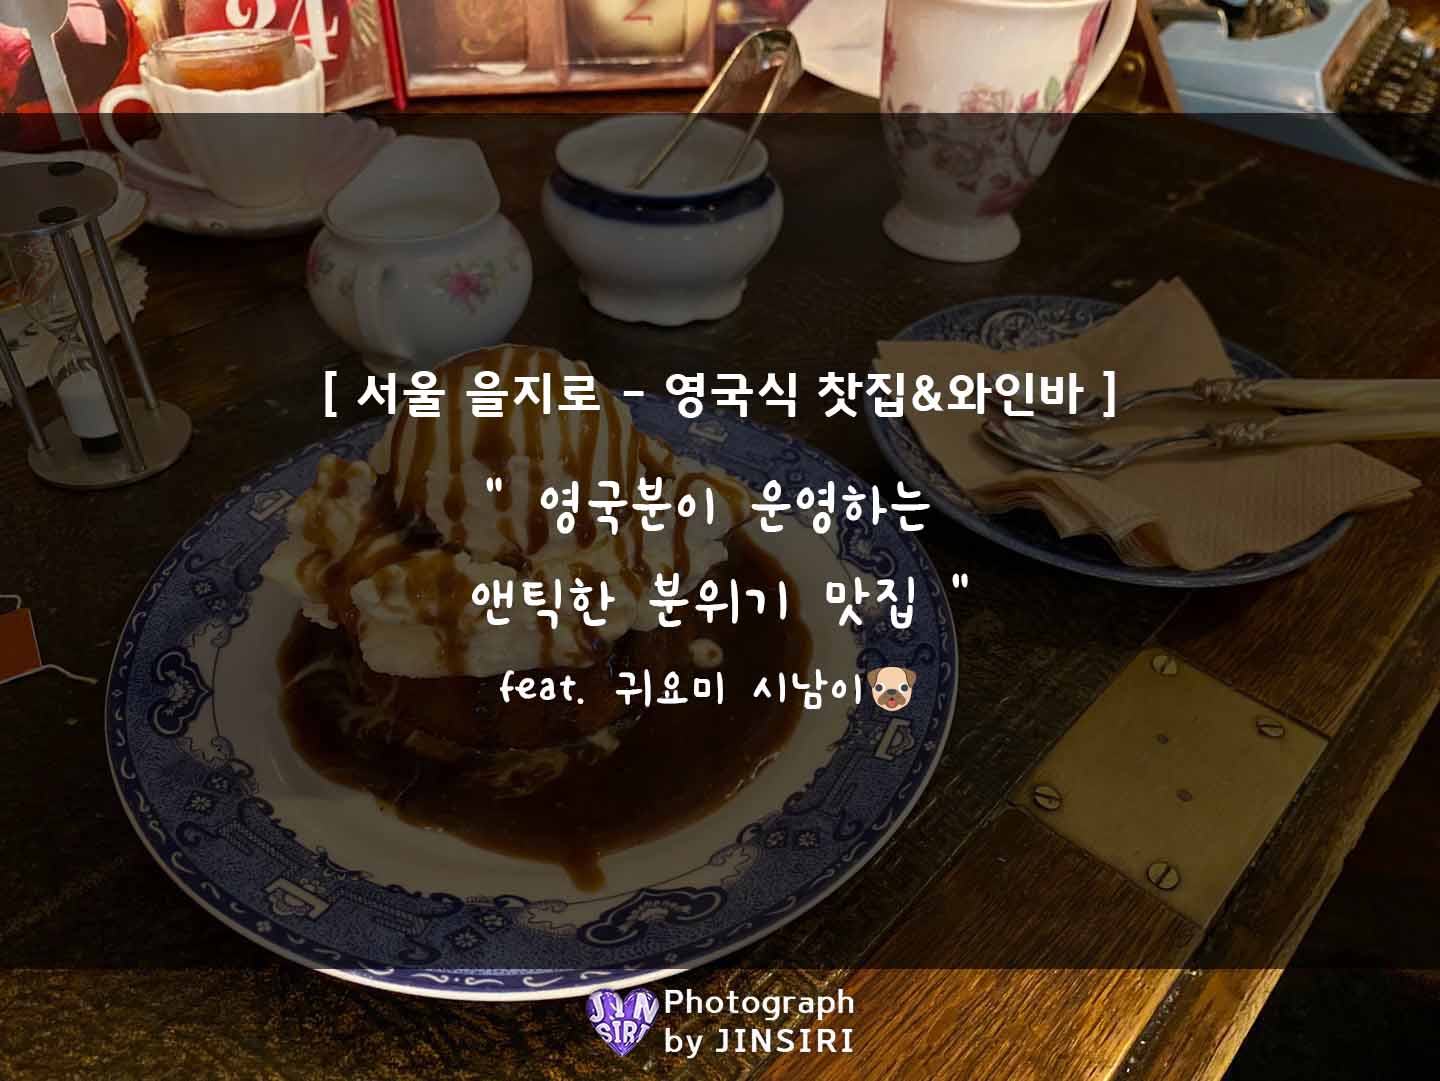 서울 을지로 카페 와인바 칵테일 힙지로 핫플 데이트